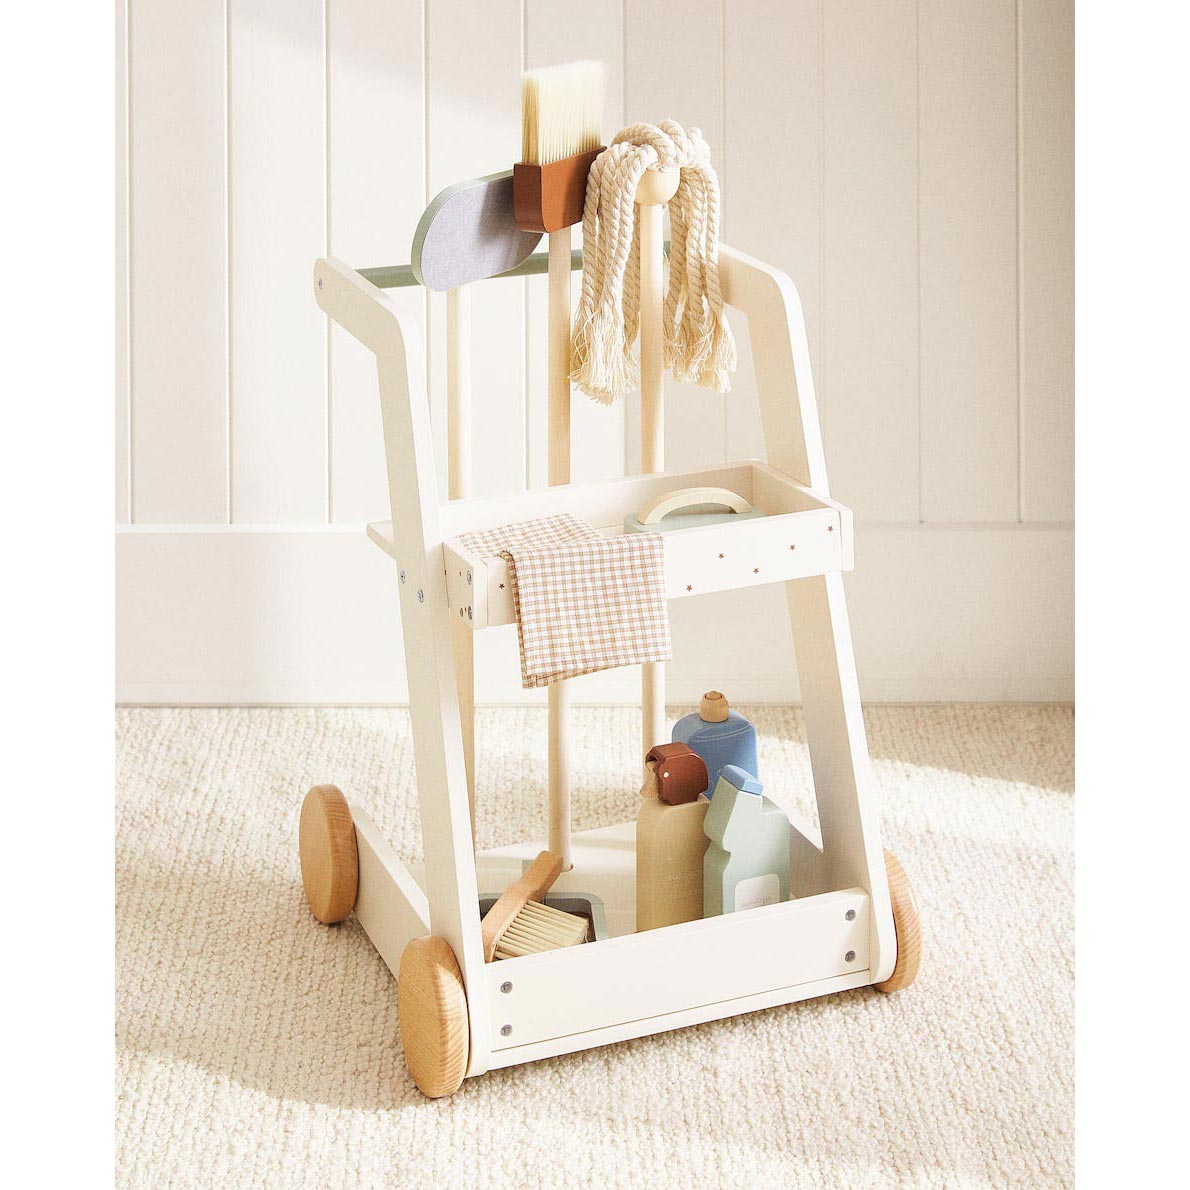 Игрушечный набор для уборки Zara Home Cleaning trolley set, 11 предметов, мультиколор фотографии